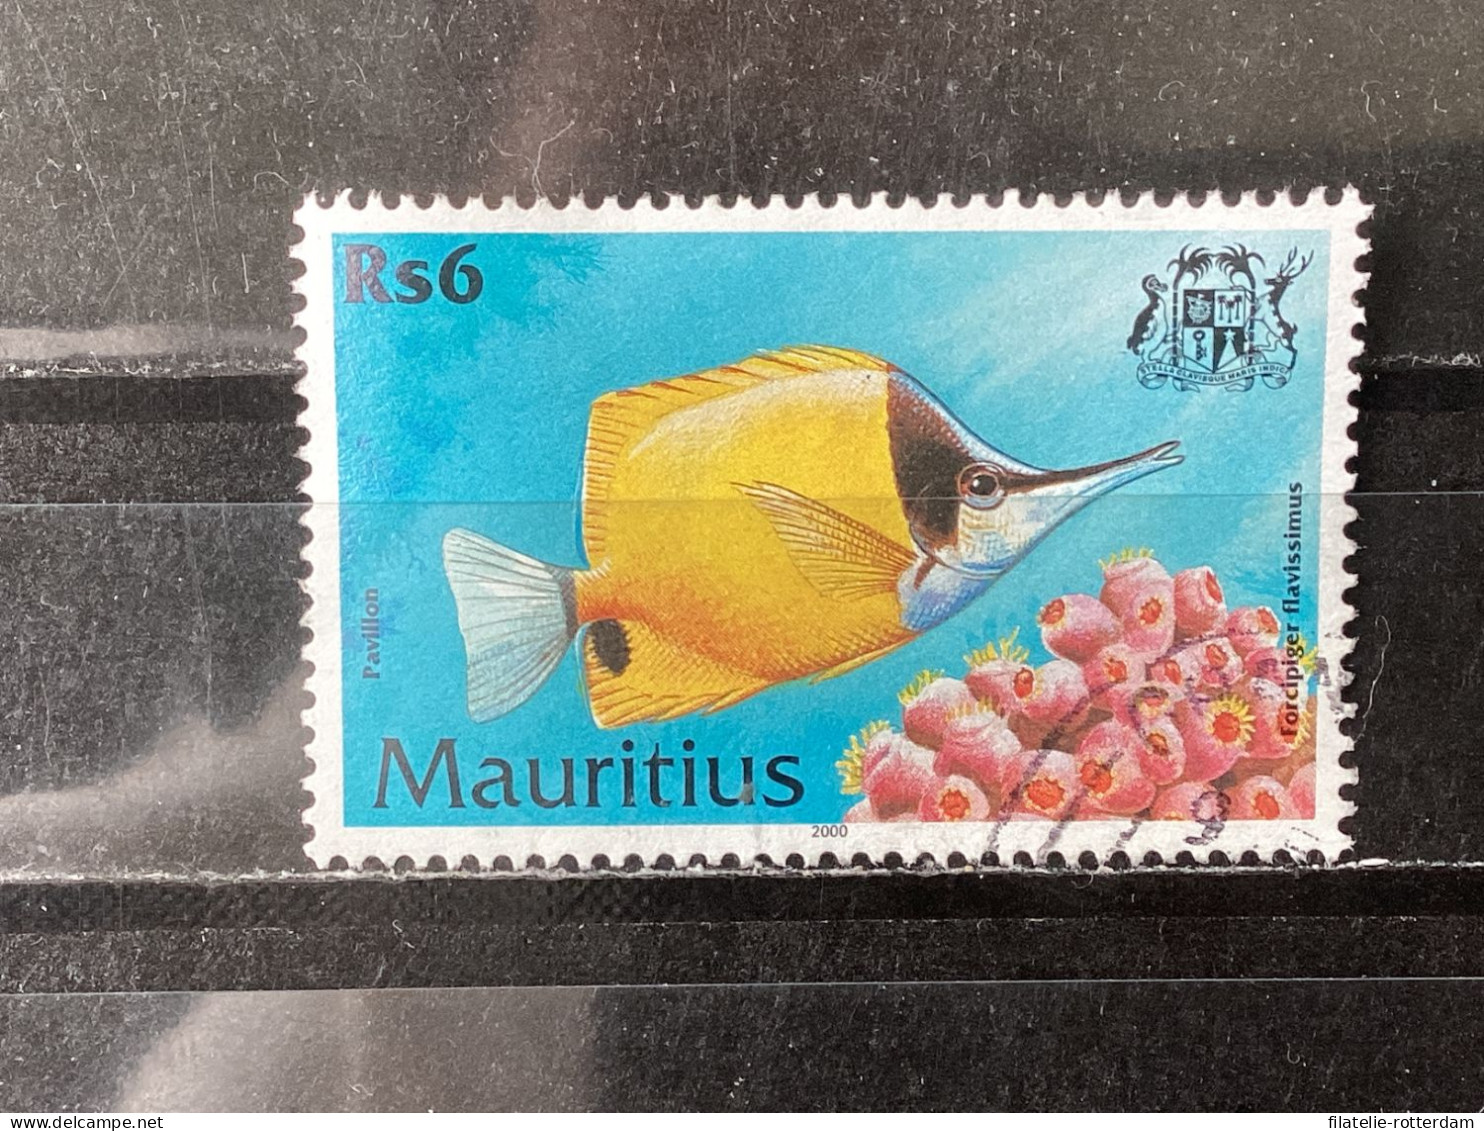 Mauritius - Fish (6) 2000 - Maurice (1968-...)